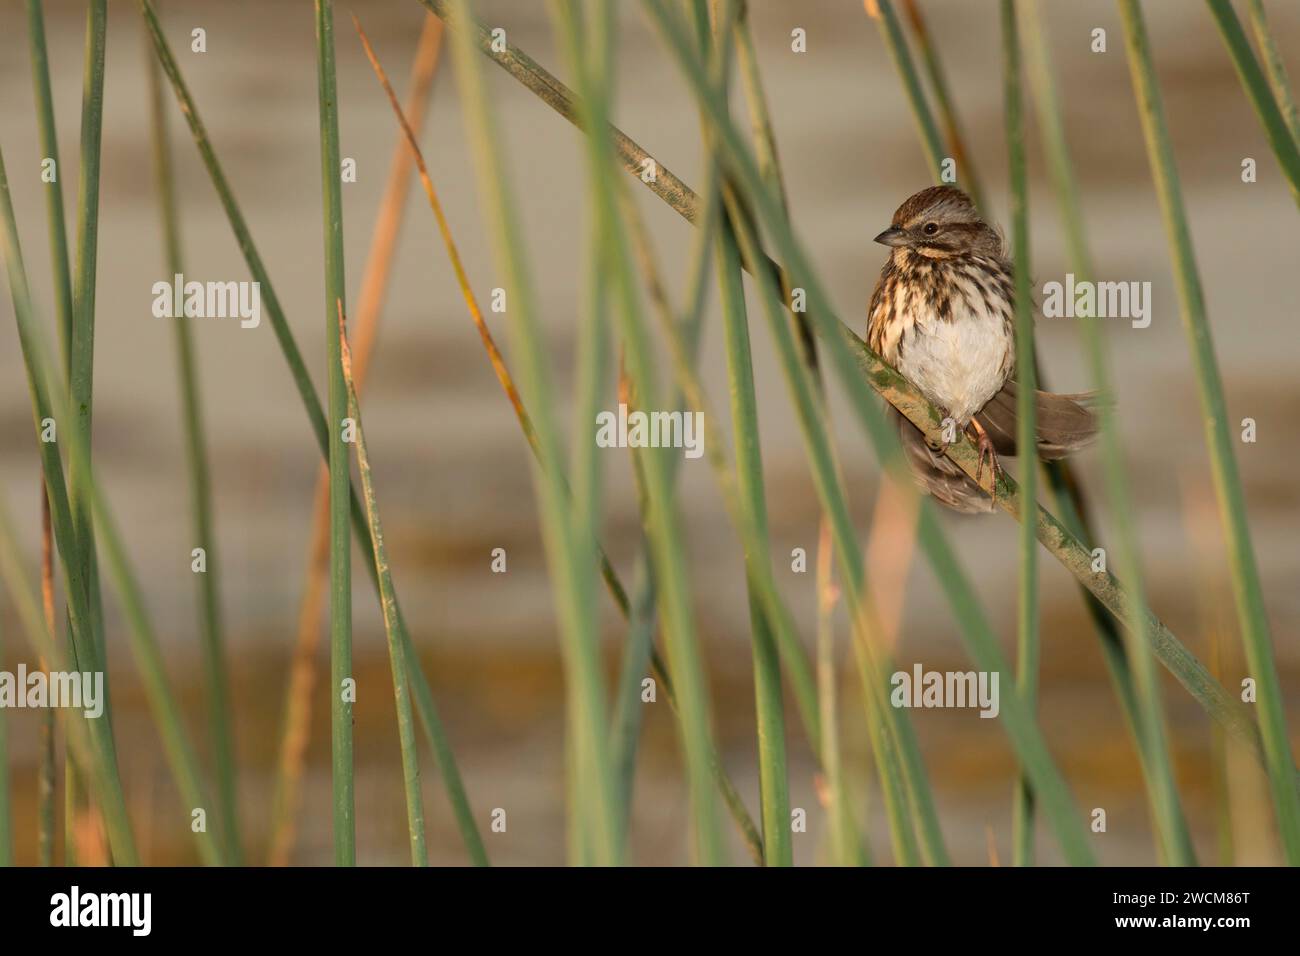 Sparrow in bulrush, Cosumnes River Preserve, California Stock Photo